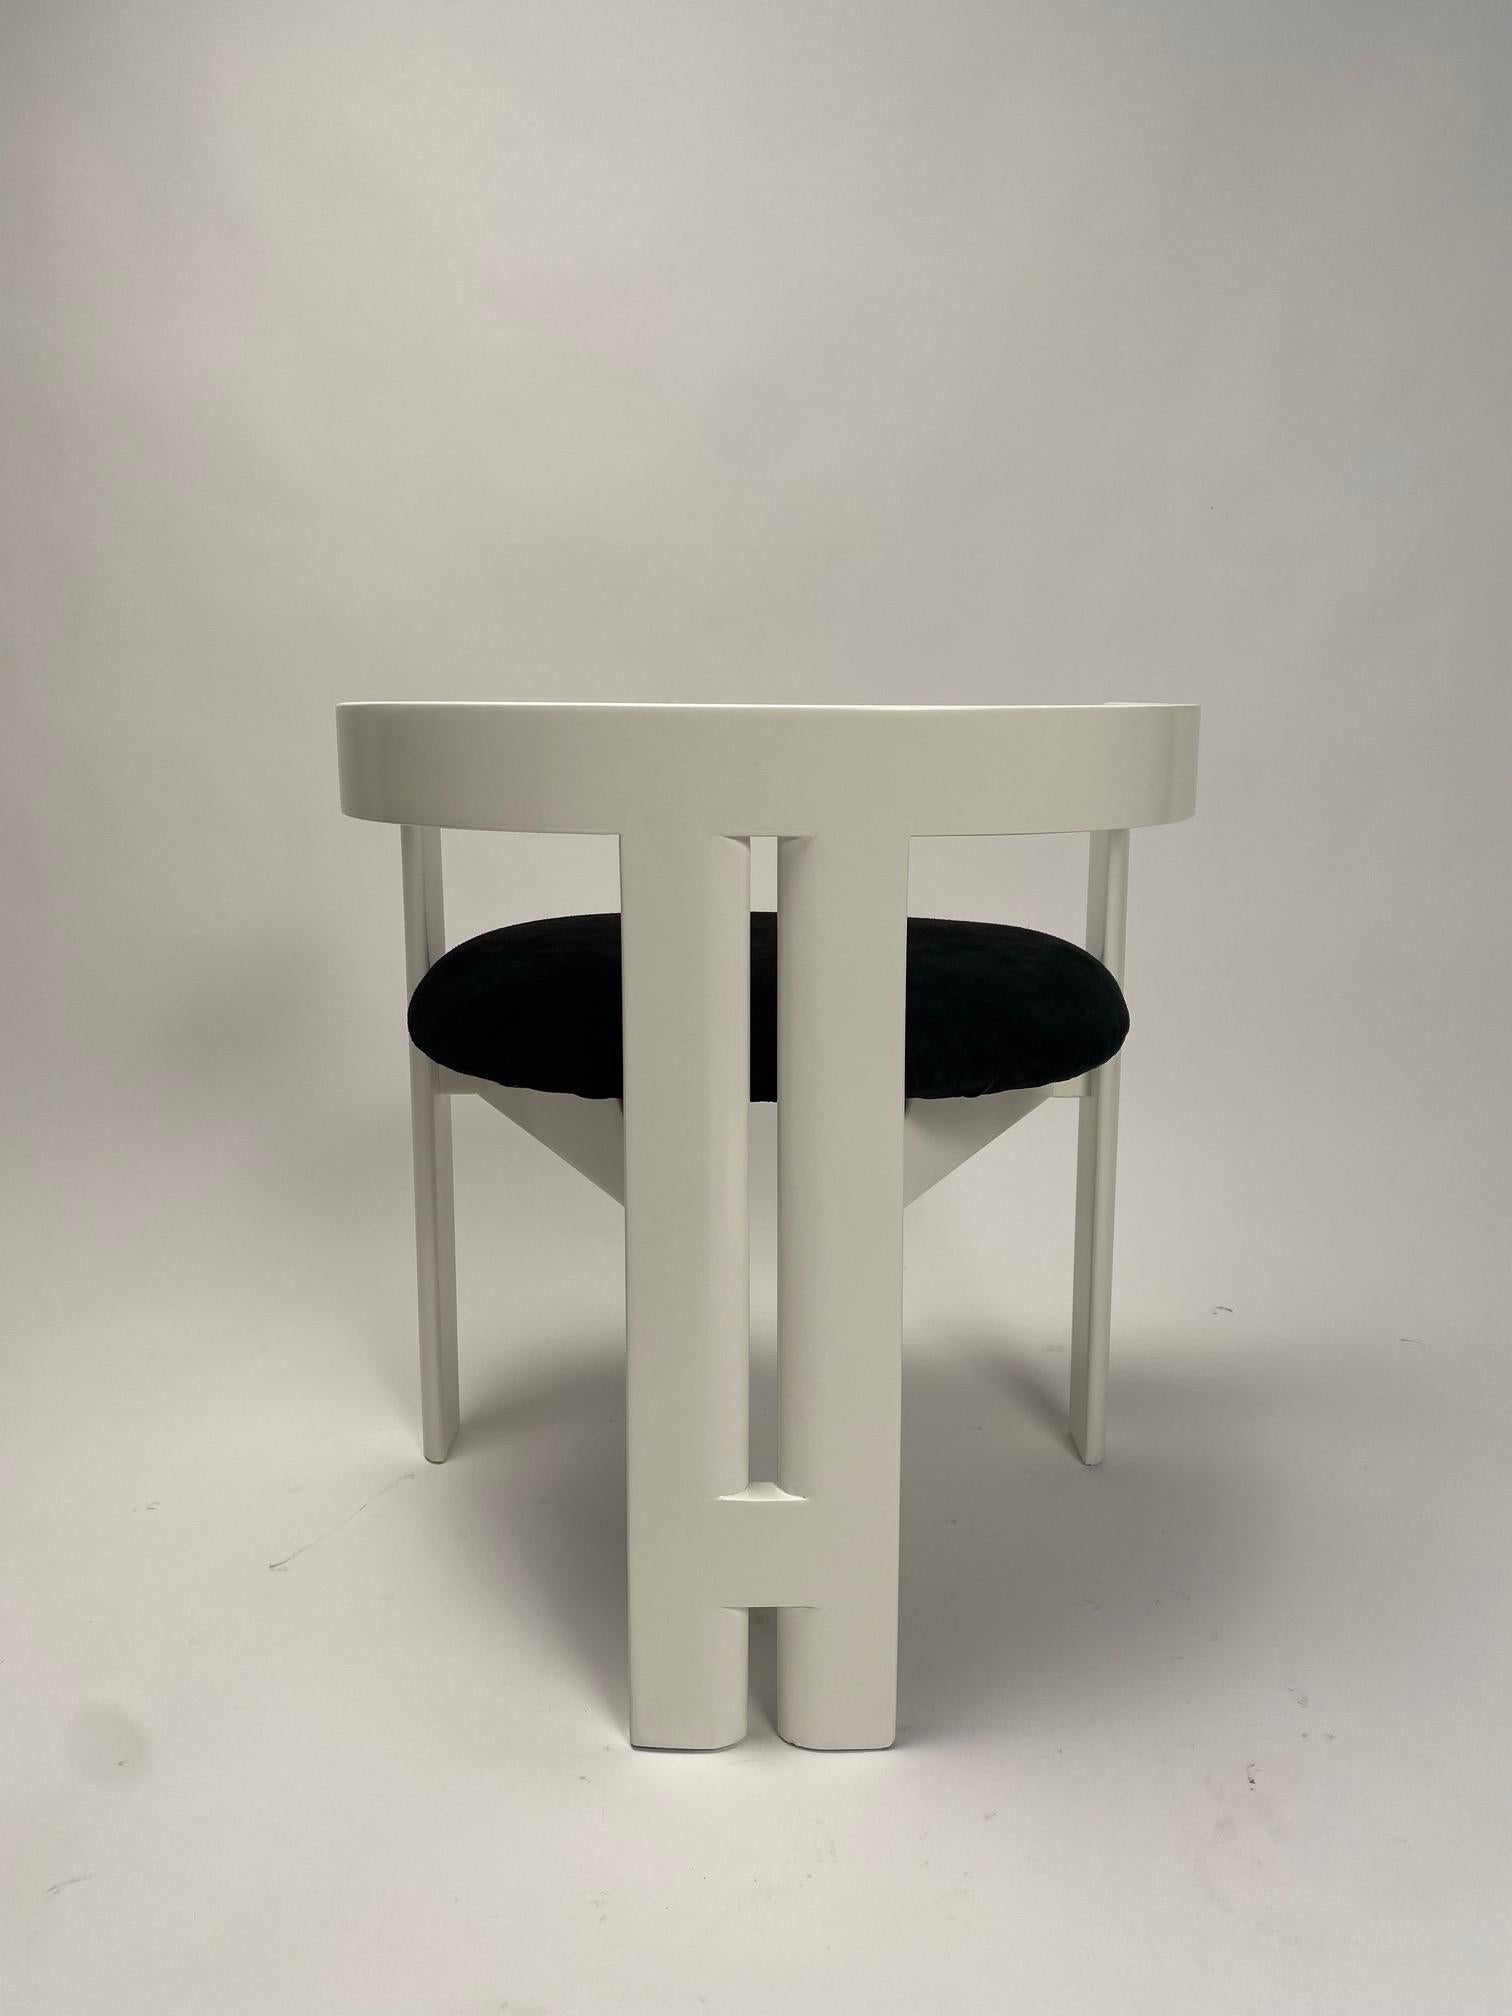 Der Pigreco-Stuhl wurde 1959 von dem berühmten italienischen Architekten Tobia Scarpa für die Firma Gavina entworfen. Es handelt sich um ein äußerst wichtiges Werk in Scarpas künstlerischer Laufbahn, denn es war das Abschlussprojekt seines